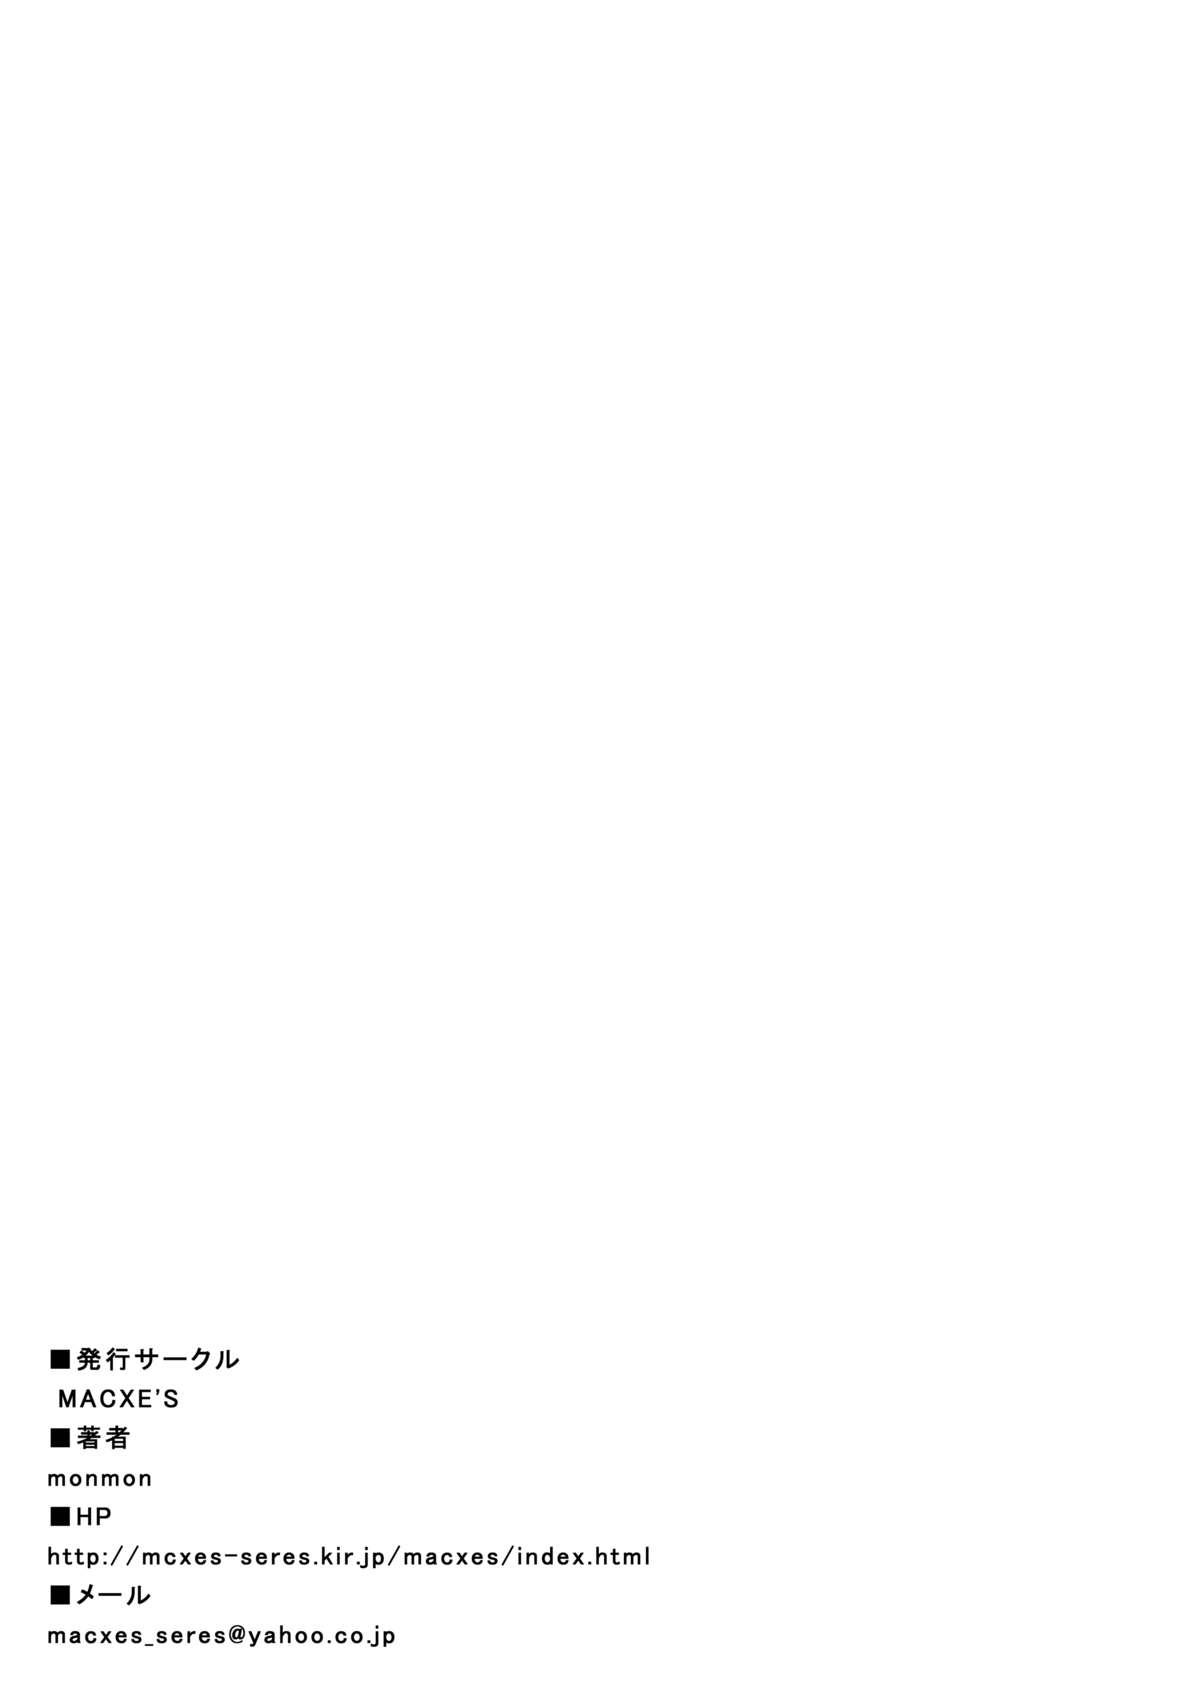 Menage [MACXE'S (monmon)] Mou Hitotsu no Ketsumatsu ~Henshin Heroine Kairaku Sennou Yes!! Precure 5 Hen~ Daisanwa (Yes! Precure 5) - Yes precure 5 Love Making - Page 35